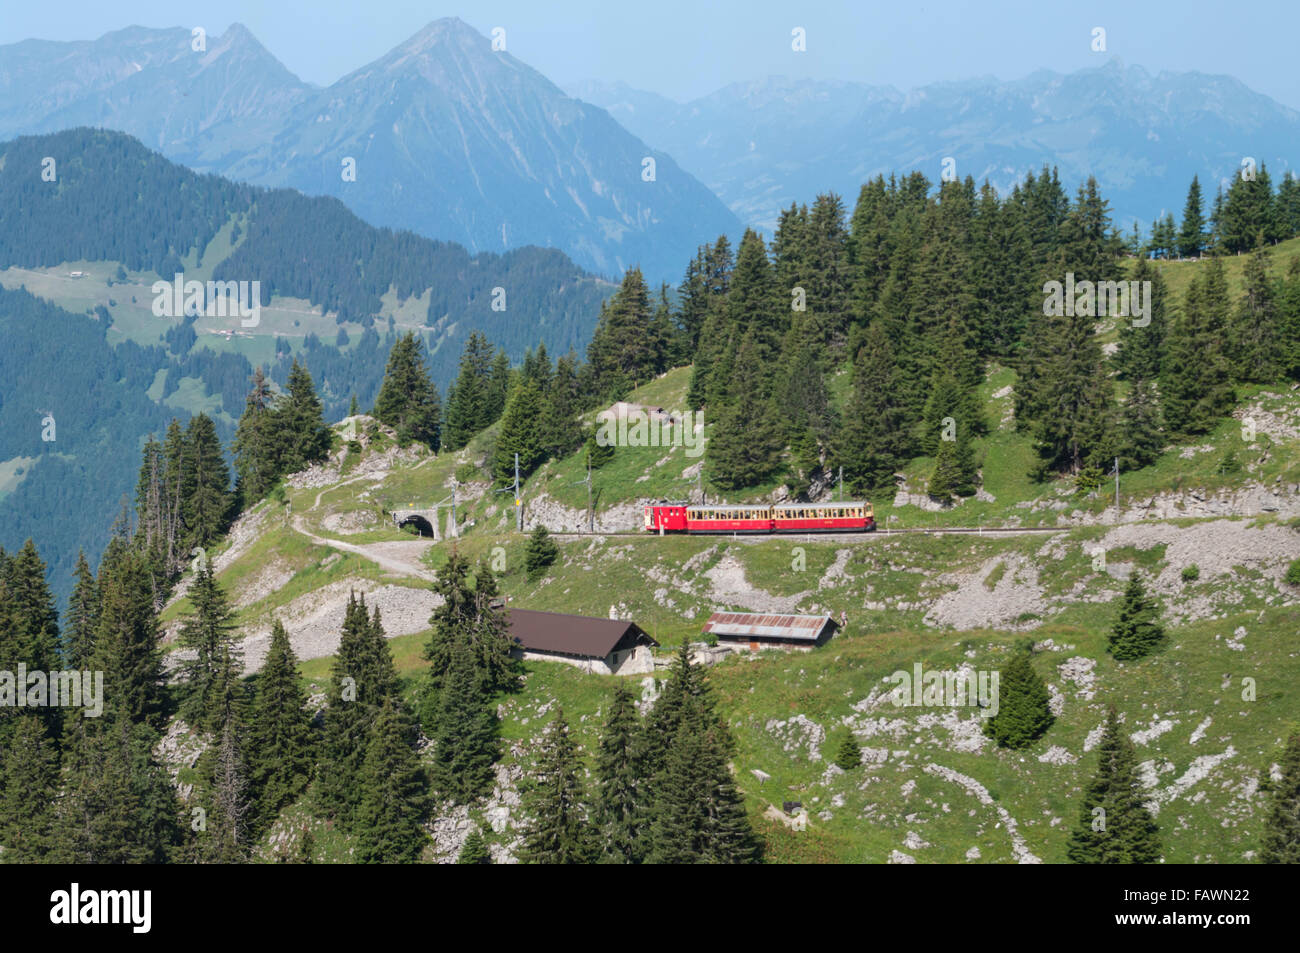 Historische elektrische Eisenbahn von der Schynige Platte Bahn SPB-Zahnradbahn in der Nähe der Bergstation in den Berner Alpen. Kanton Bern, Schweiz. Stockfoto